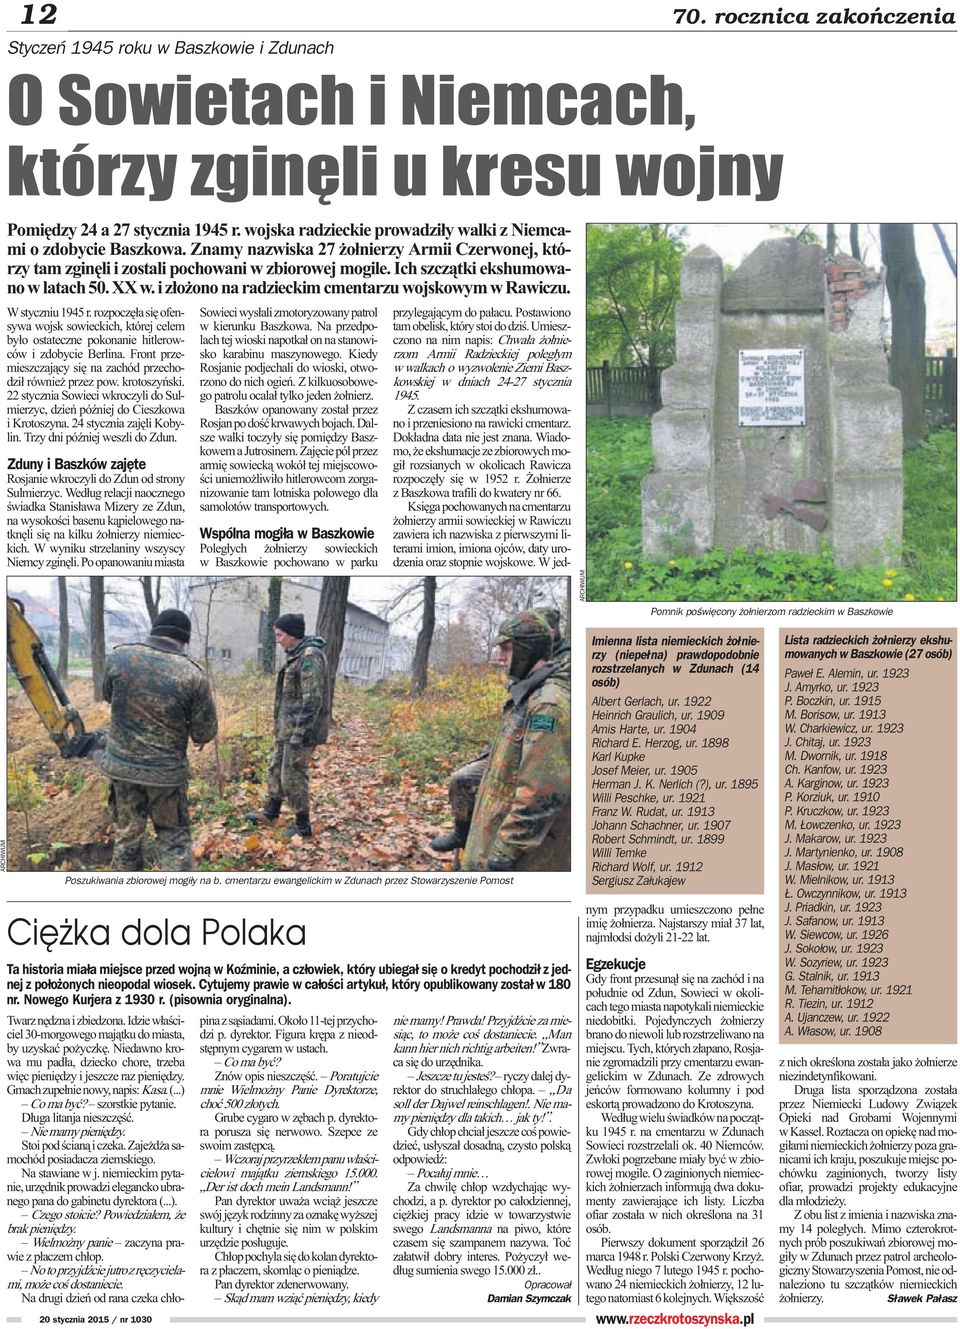 Ich szcz¹tki ekshumowano w latach 50. XX w. i z³o ono na radzieckim cmentarzu wojskowym w Rawiczu. W styczniu 1945 r.